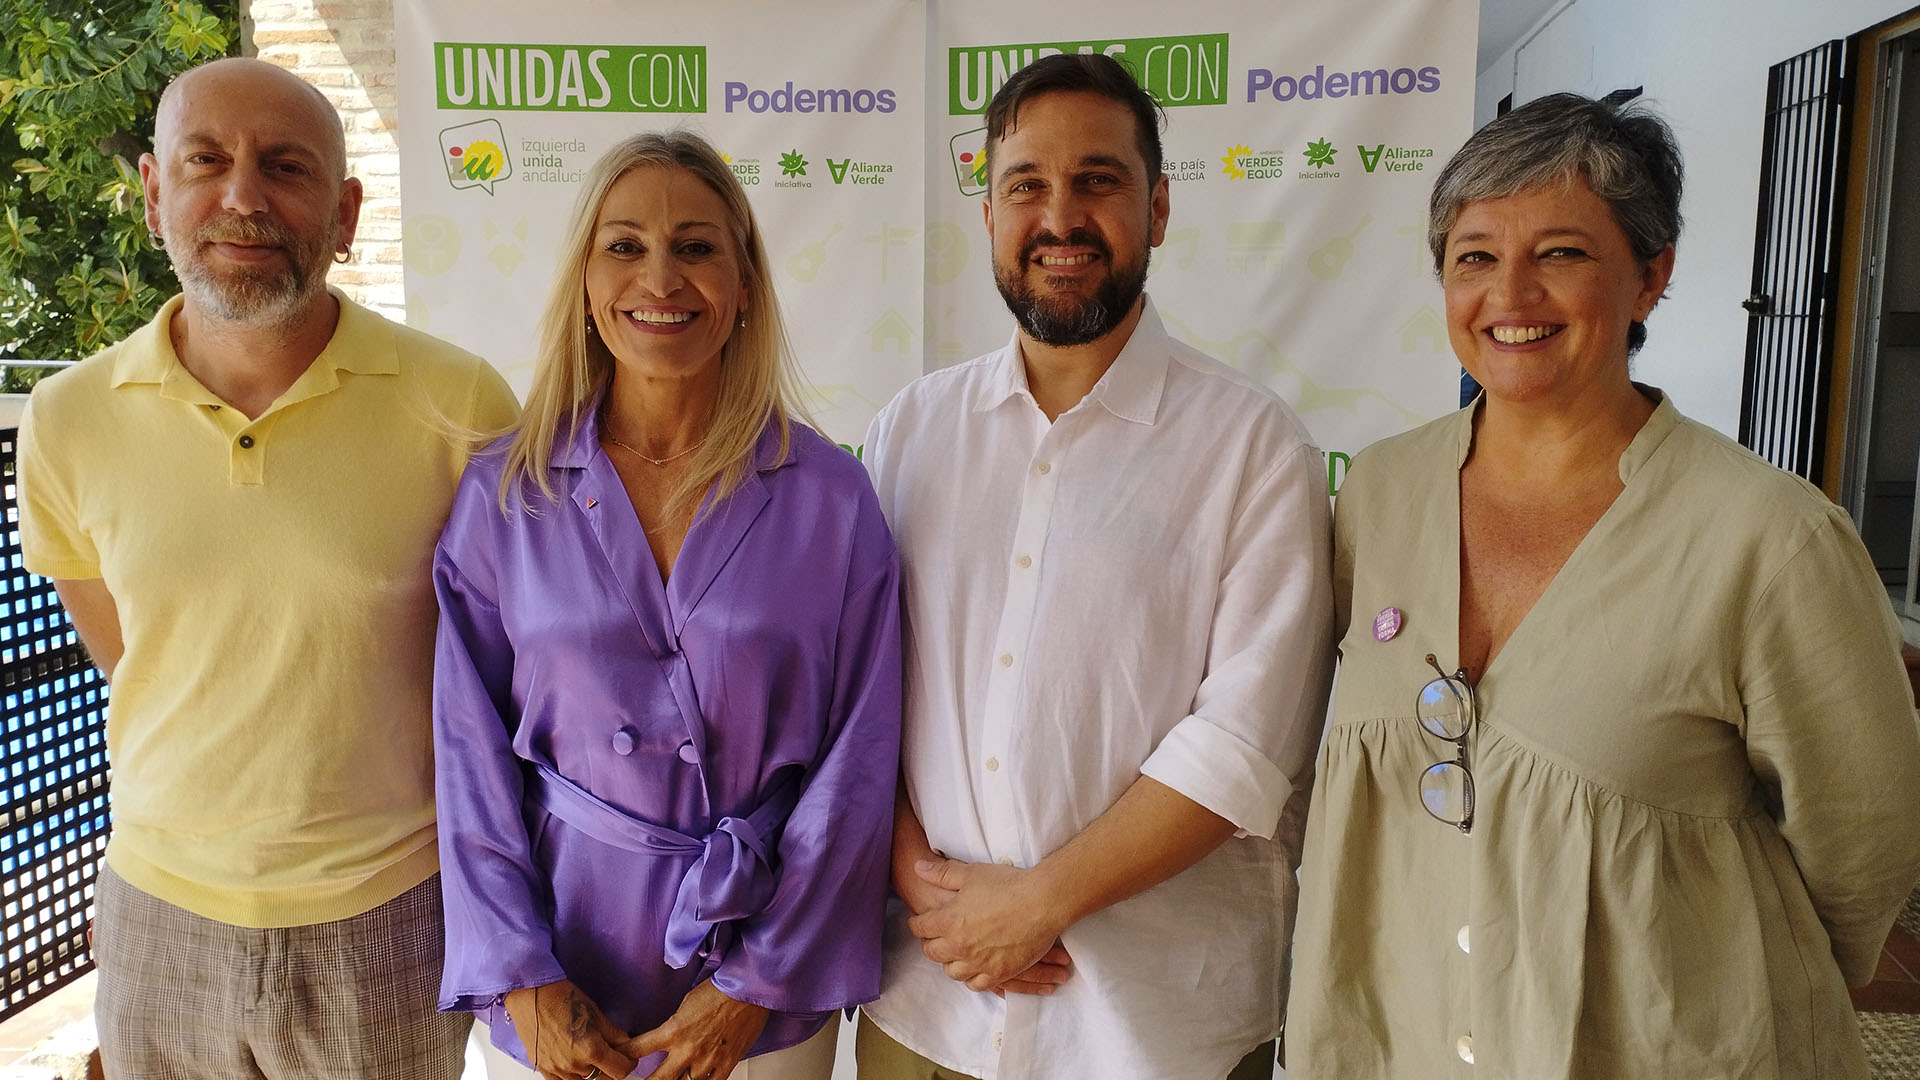 Unidas con Podemos presenta su candidatura a las elecciones municipales